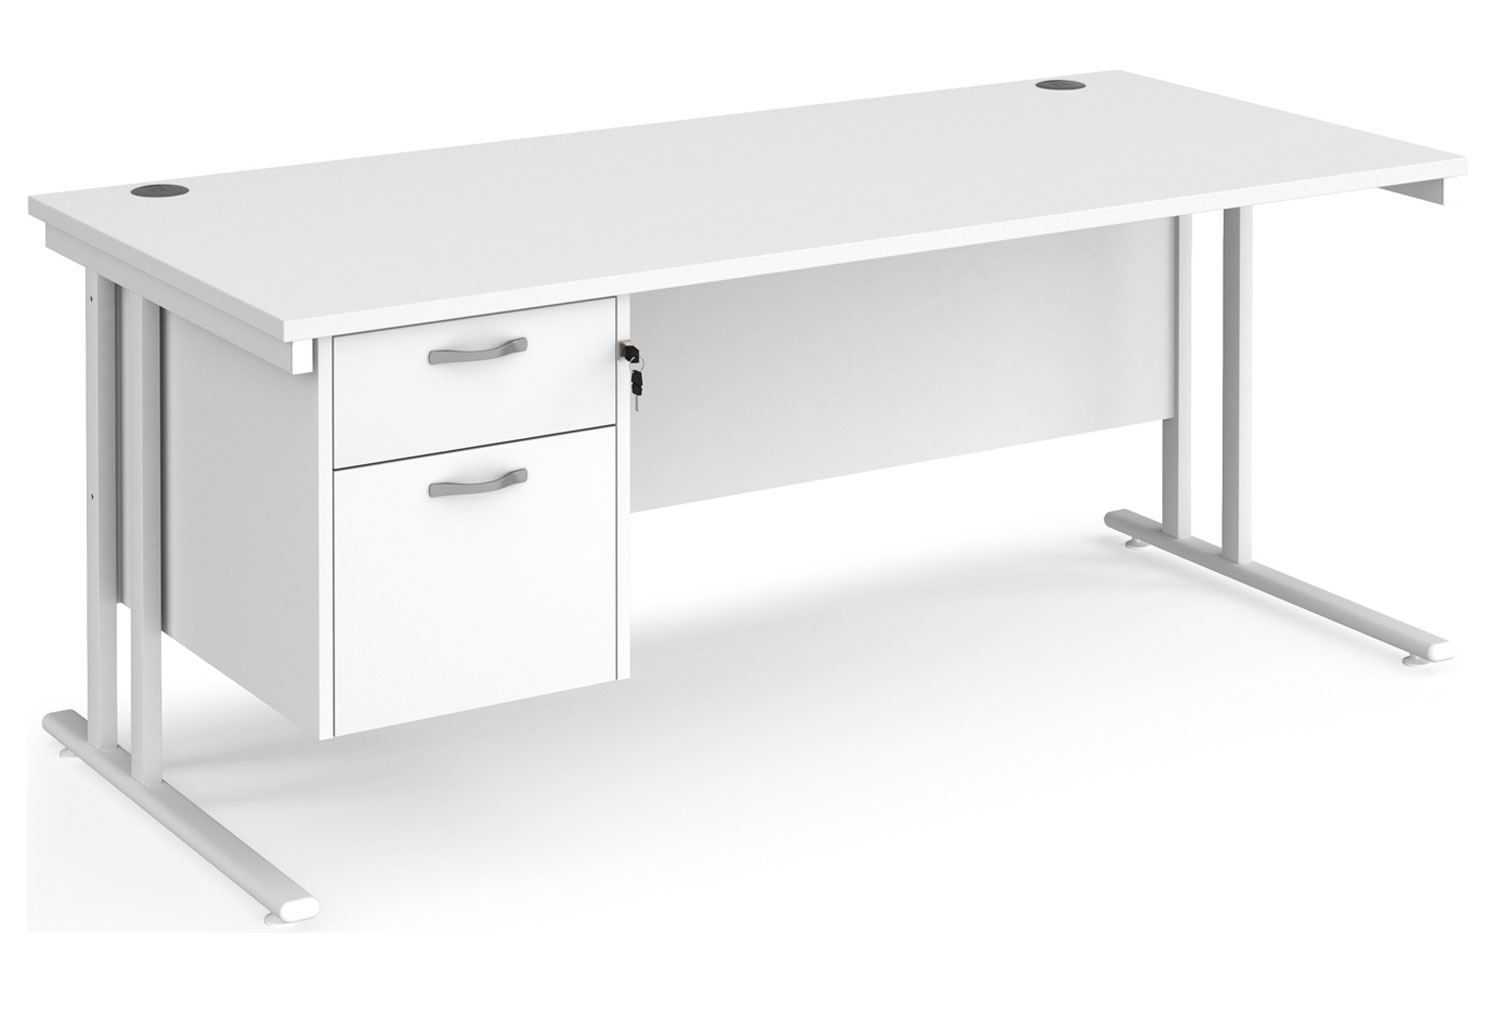 All White Premium C-Leg Rectangular Office Desk 2 Drawers, 180wx80dx73h (cm), Fully Installed